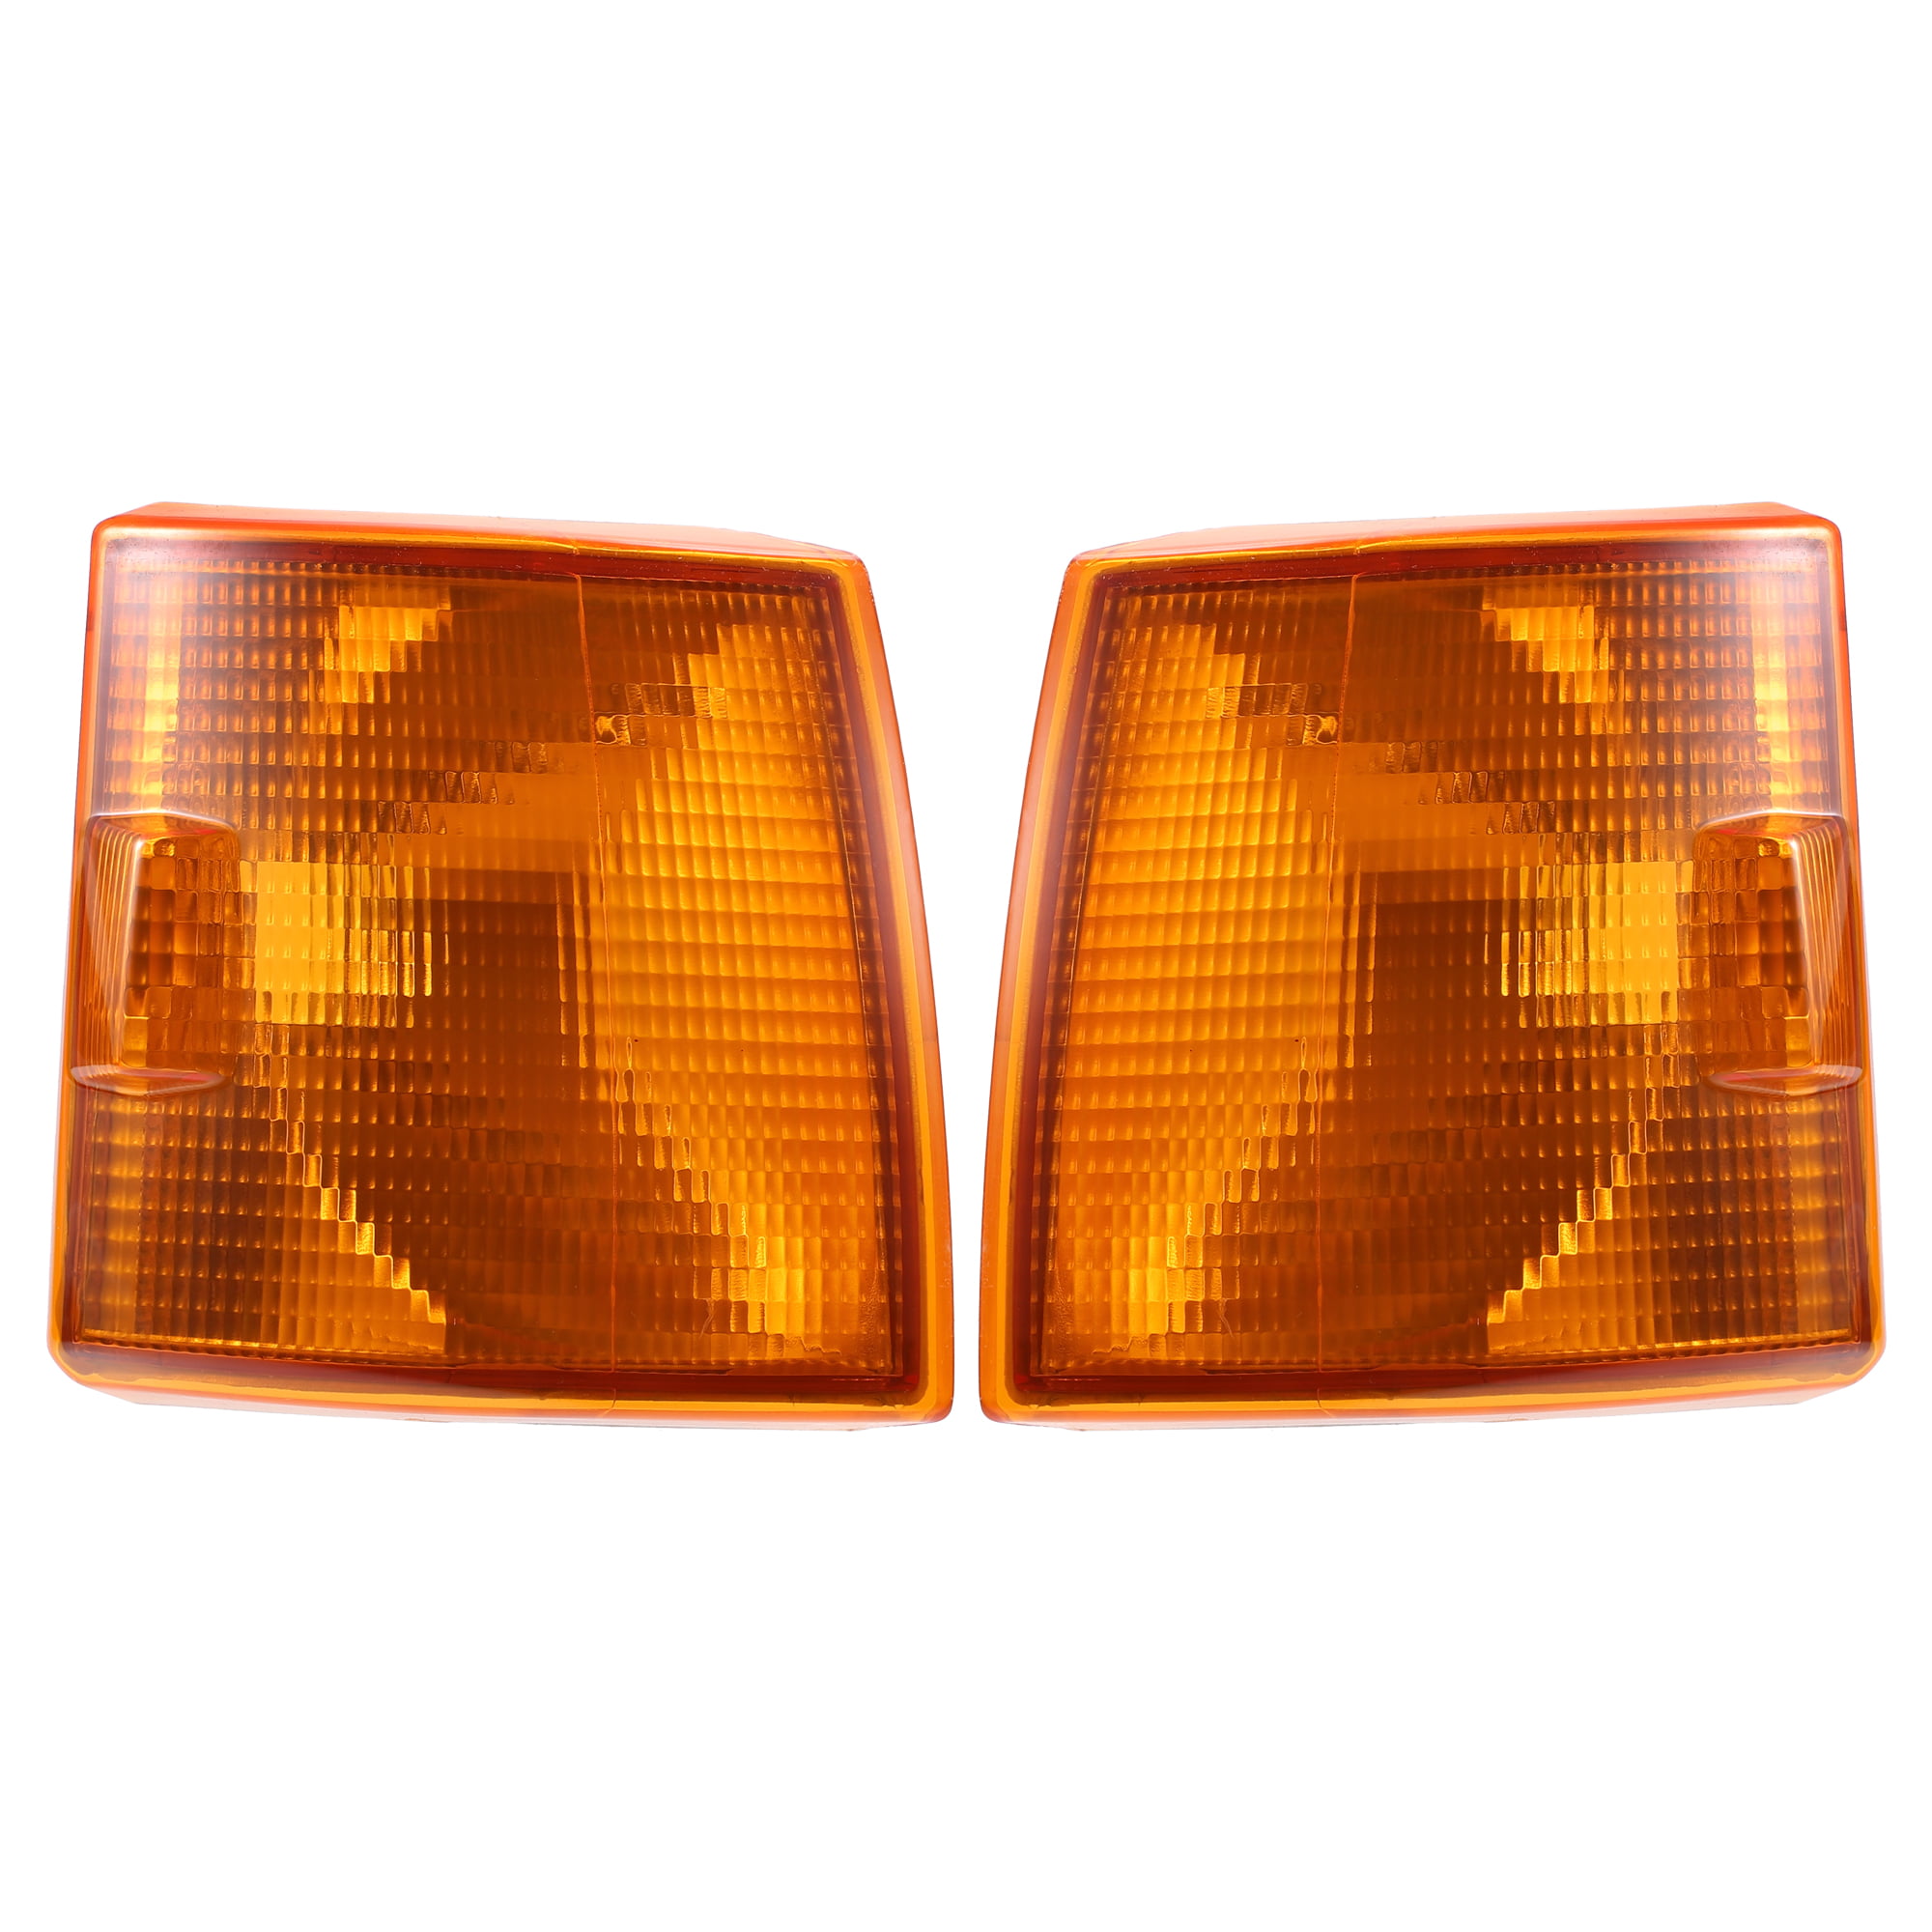 Blinklicht Orange vorne rechts für VW Transporter T4 701953050 - KA16032 